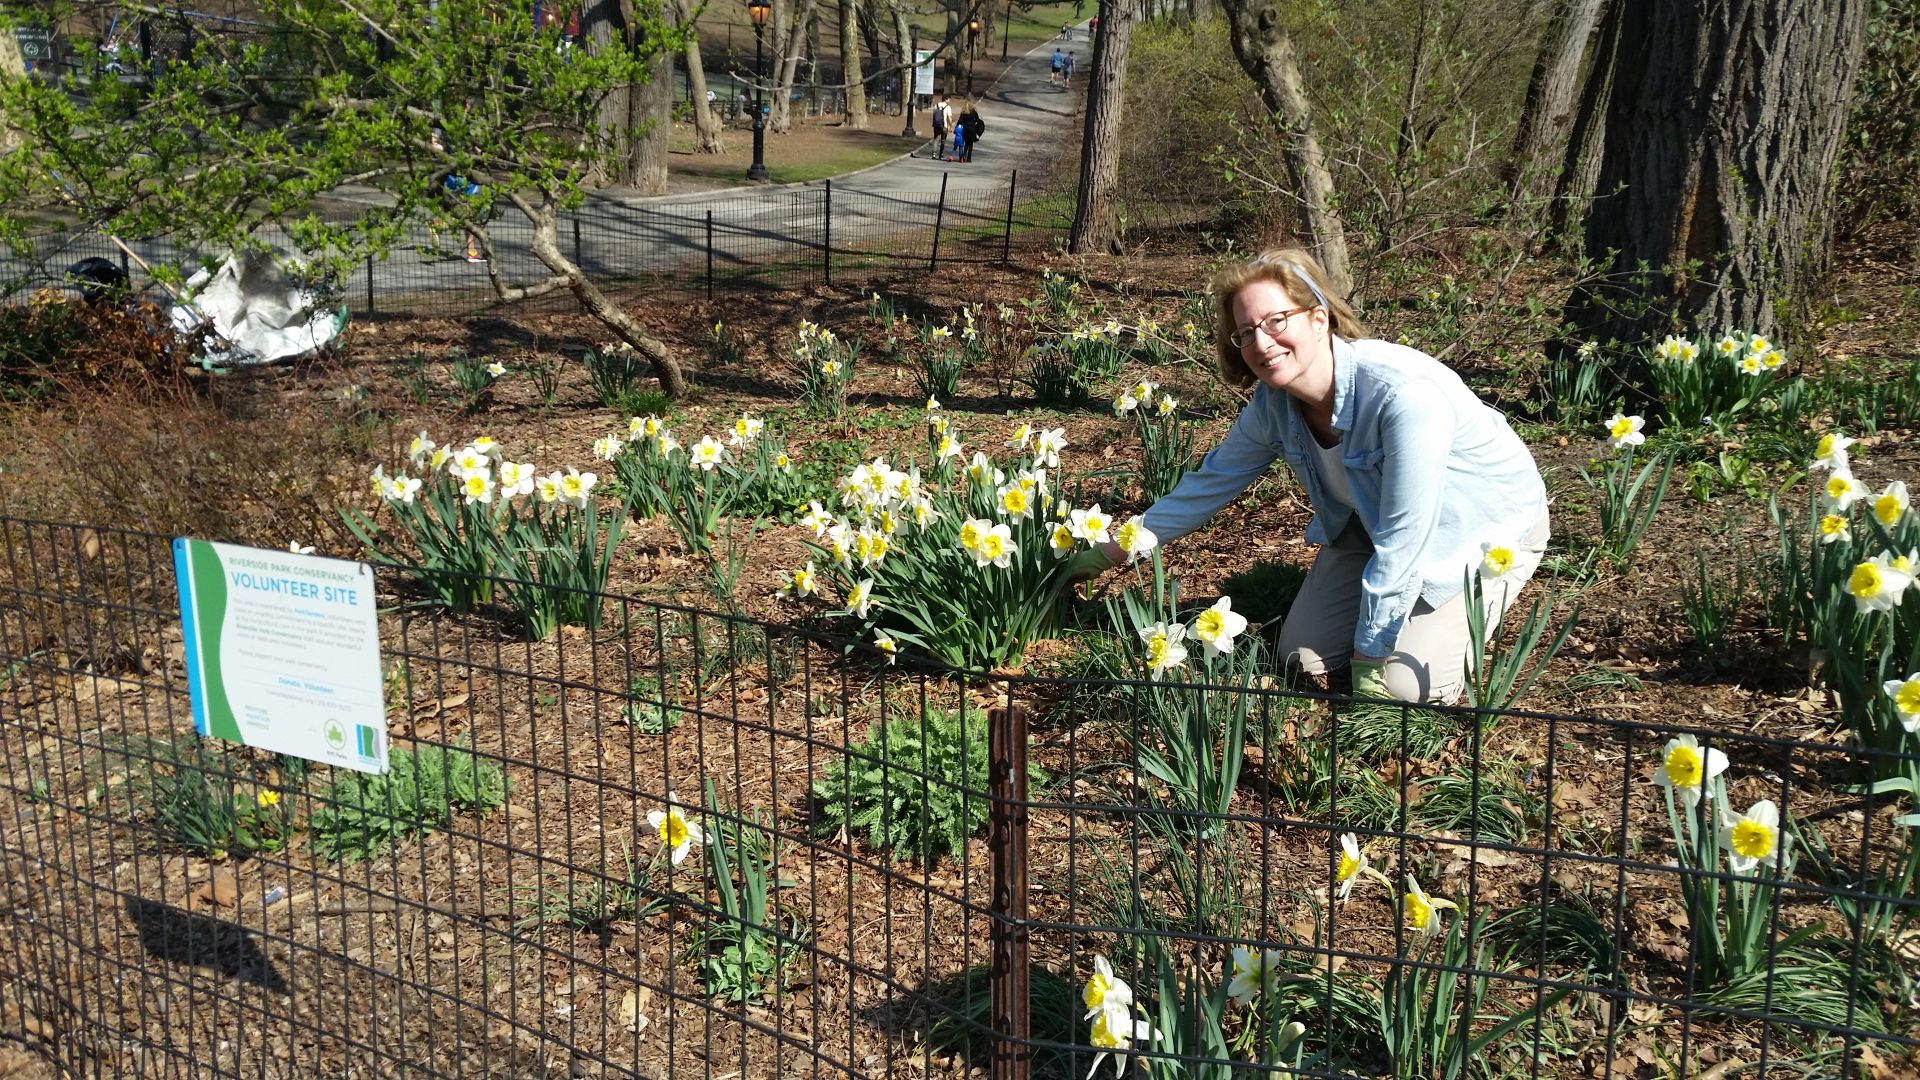 Volunteer weeds garden of daffodils